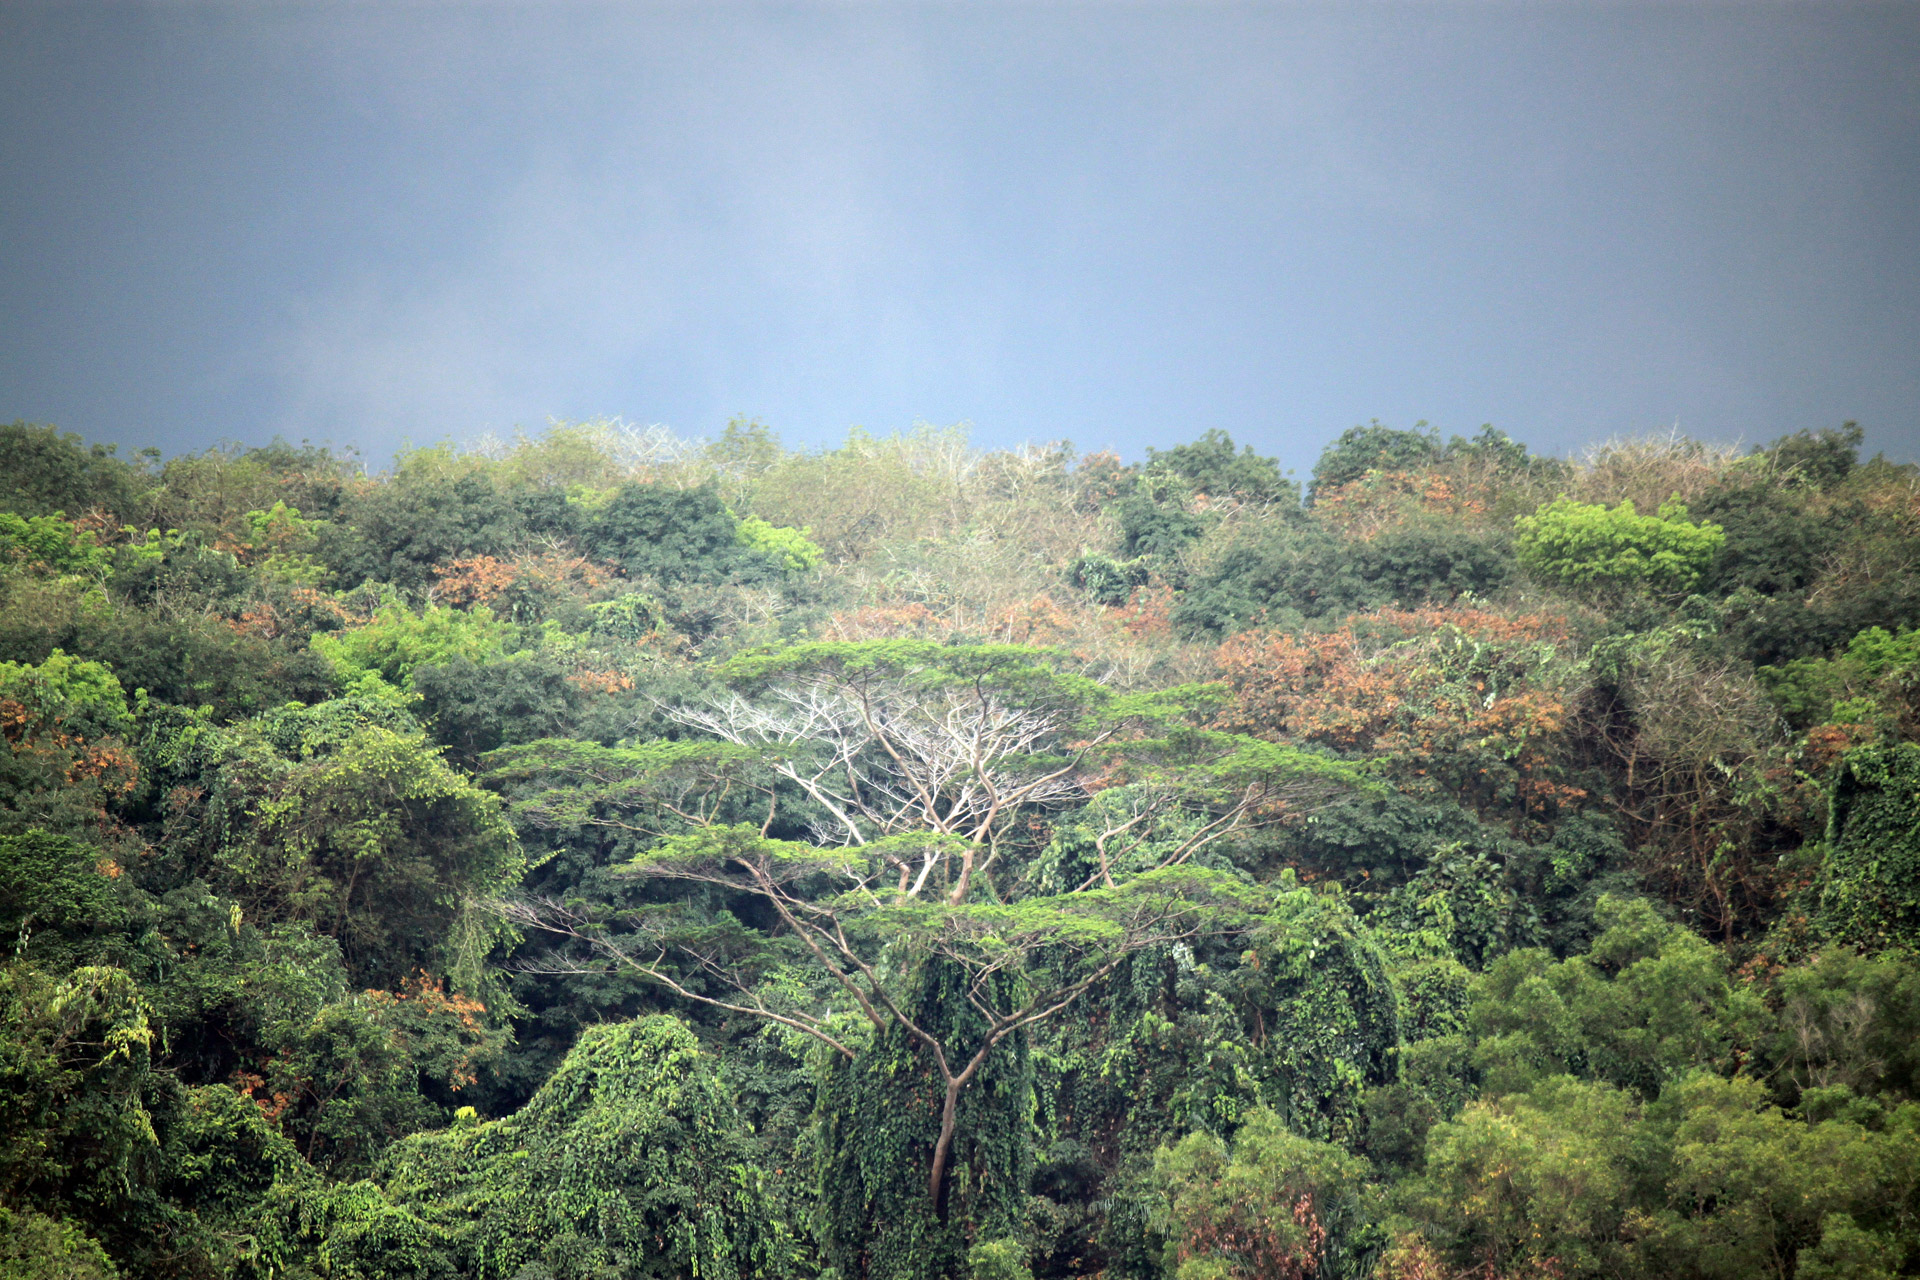 Do my best pink something Cel mai bogat ecosistem de pe planetă – Pădurea tropicală - Deștepți.ro